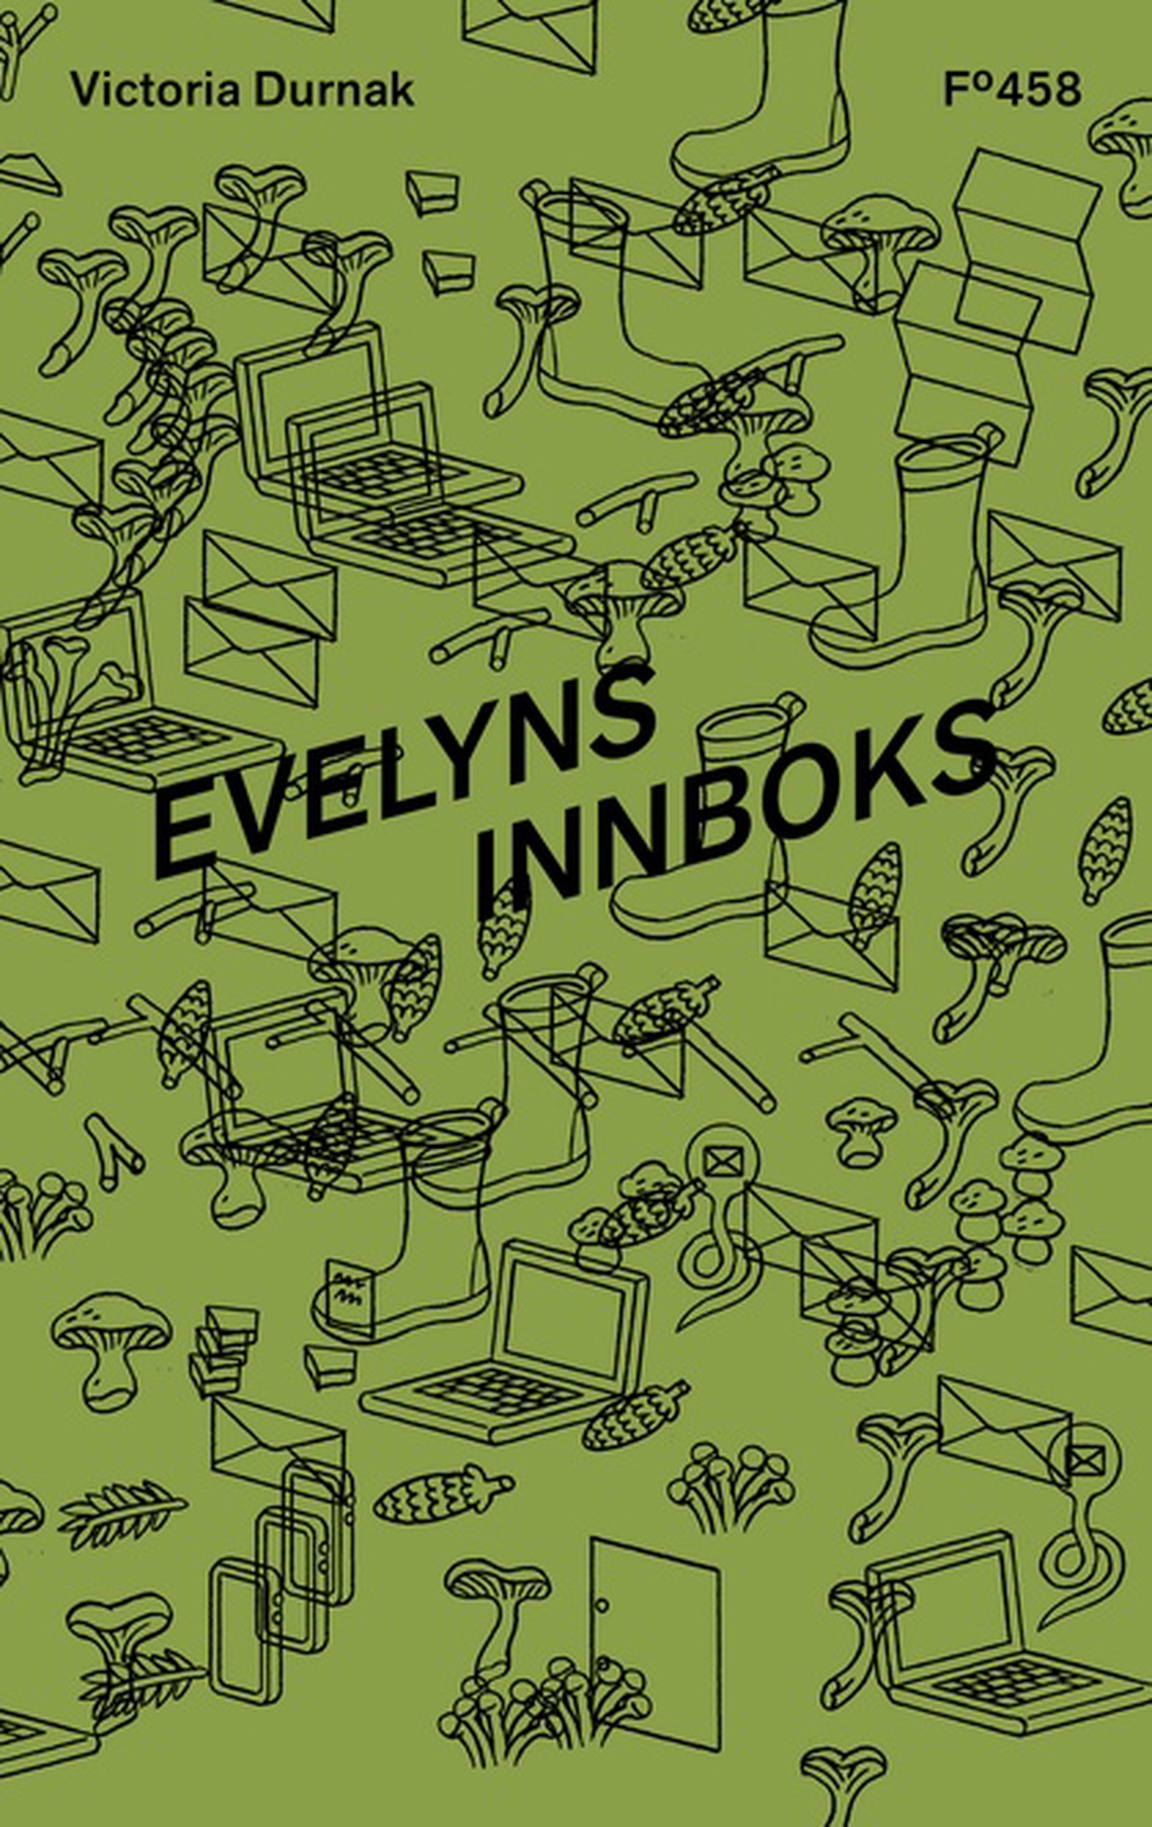 Bilde av forsiden til boken "Evelyns innboks"